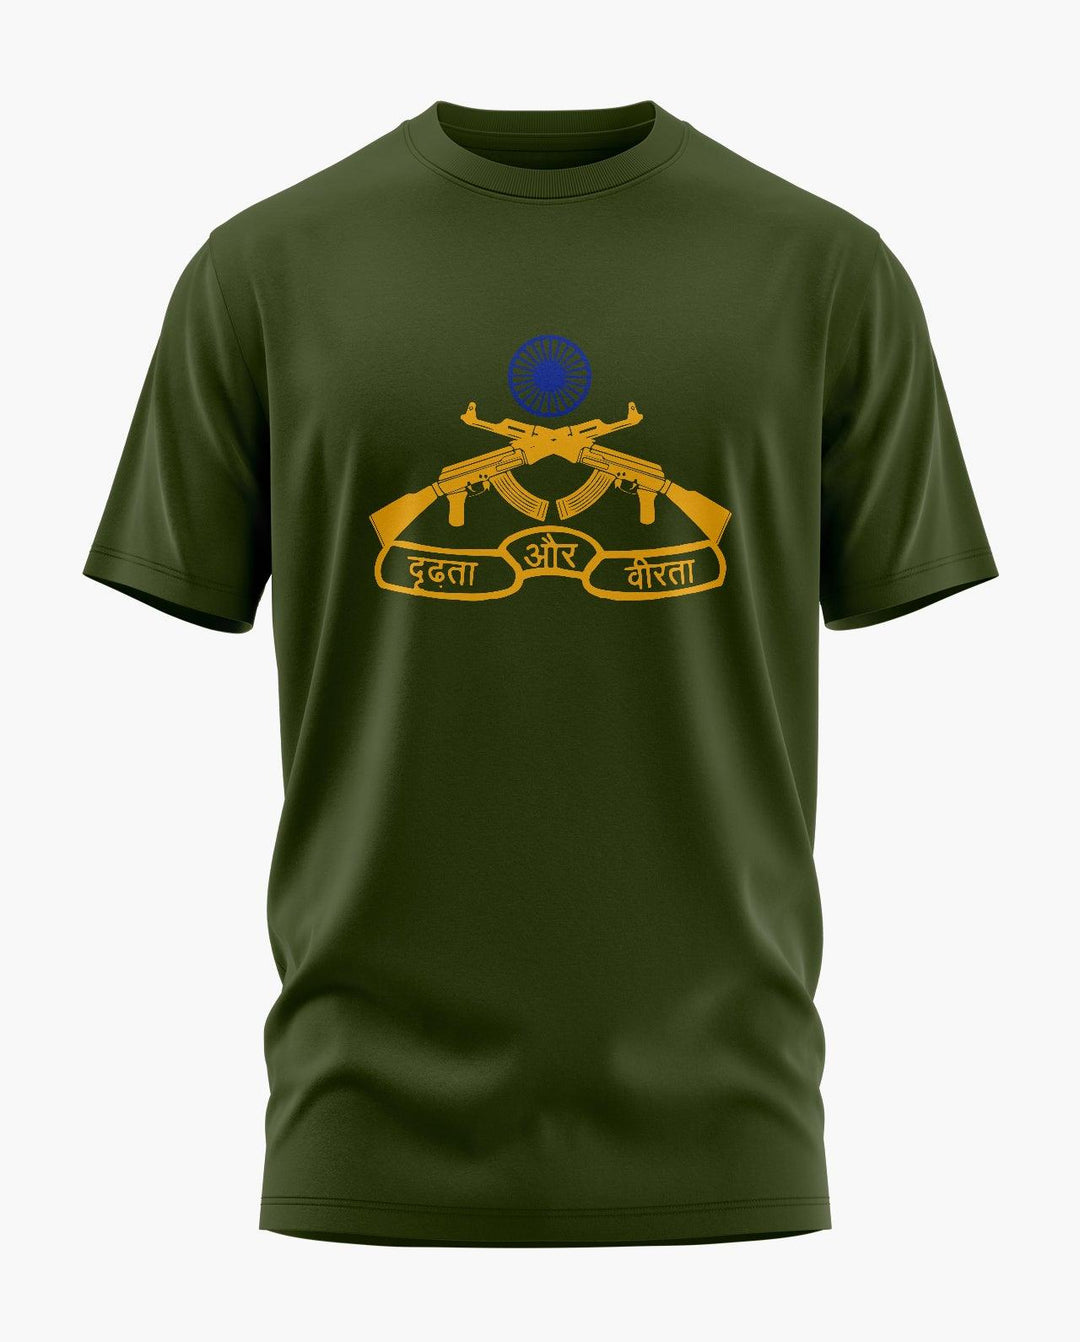 Rashtriya Rifles T-Shirt - Aero Armour